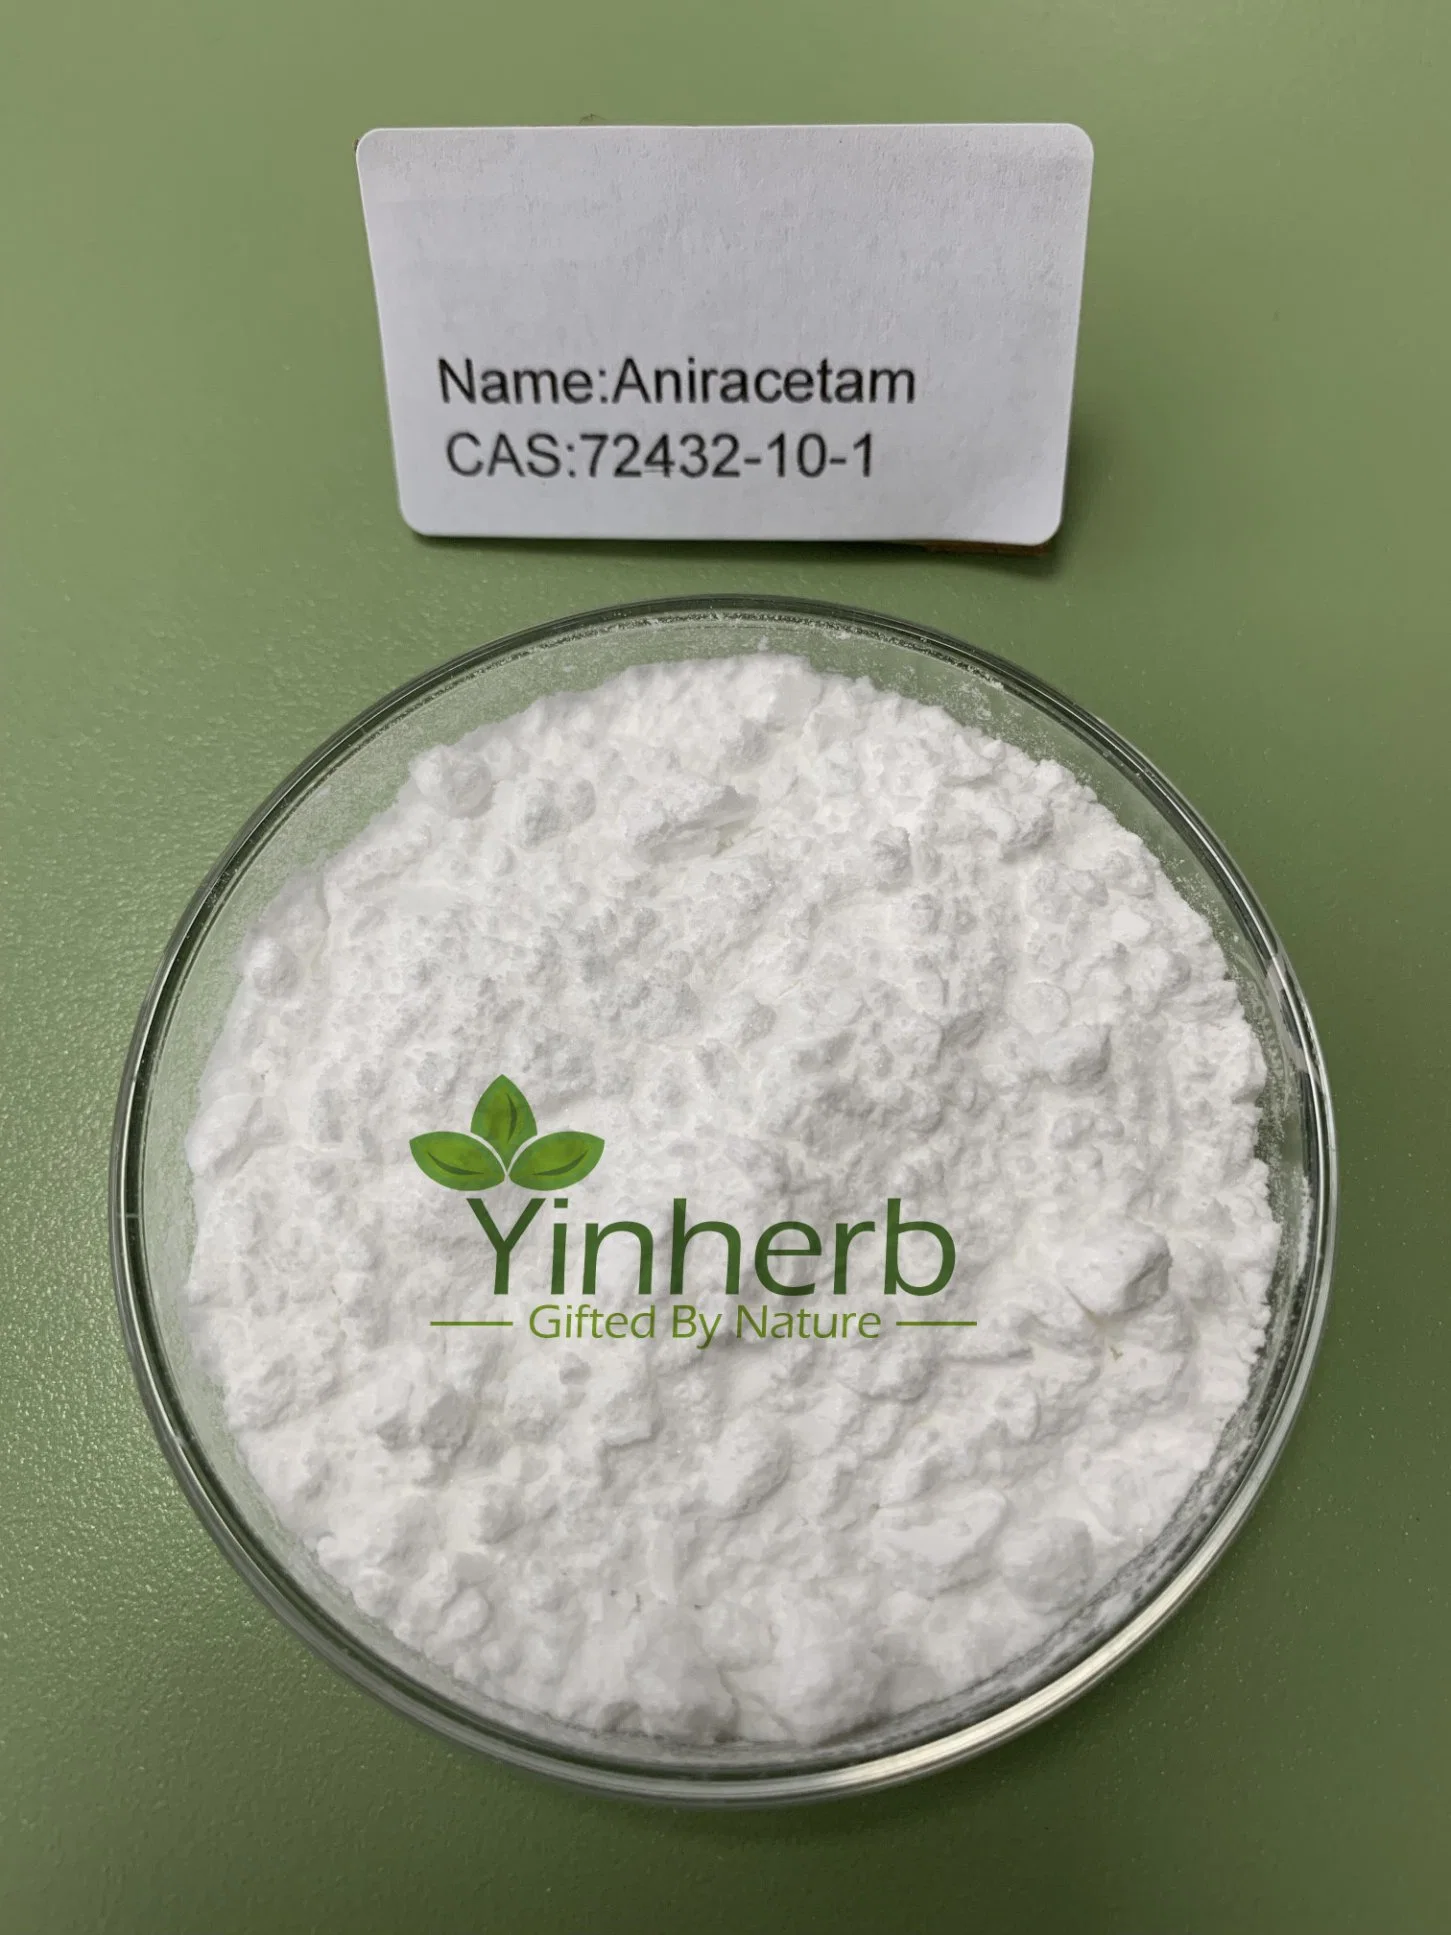 Laboratorio Excllent Fasoracetam Yinherb Efecto Polvo con buen precio para la mejora de la memoria